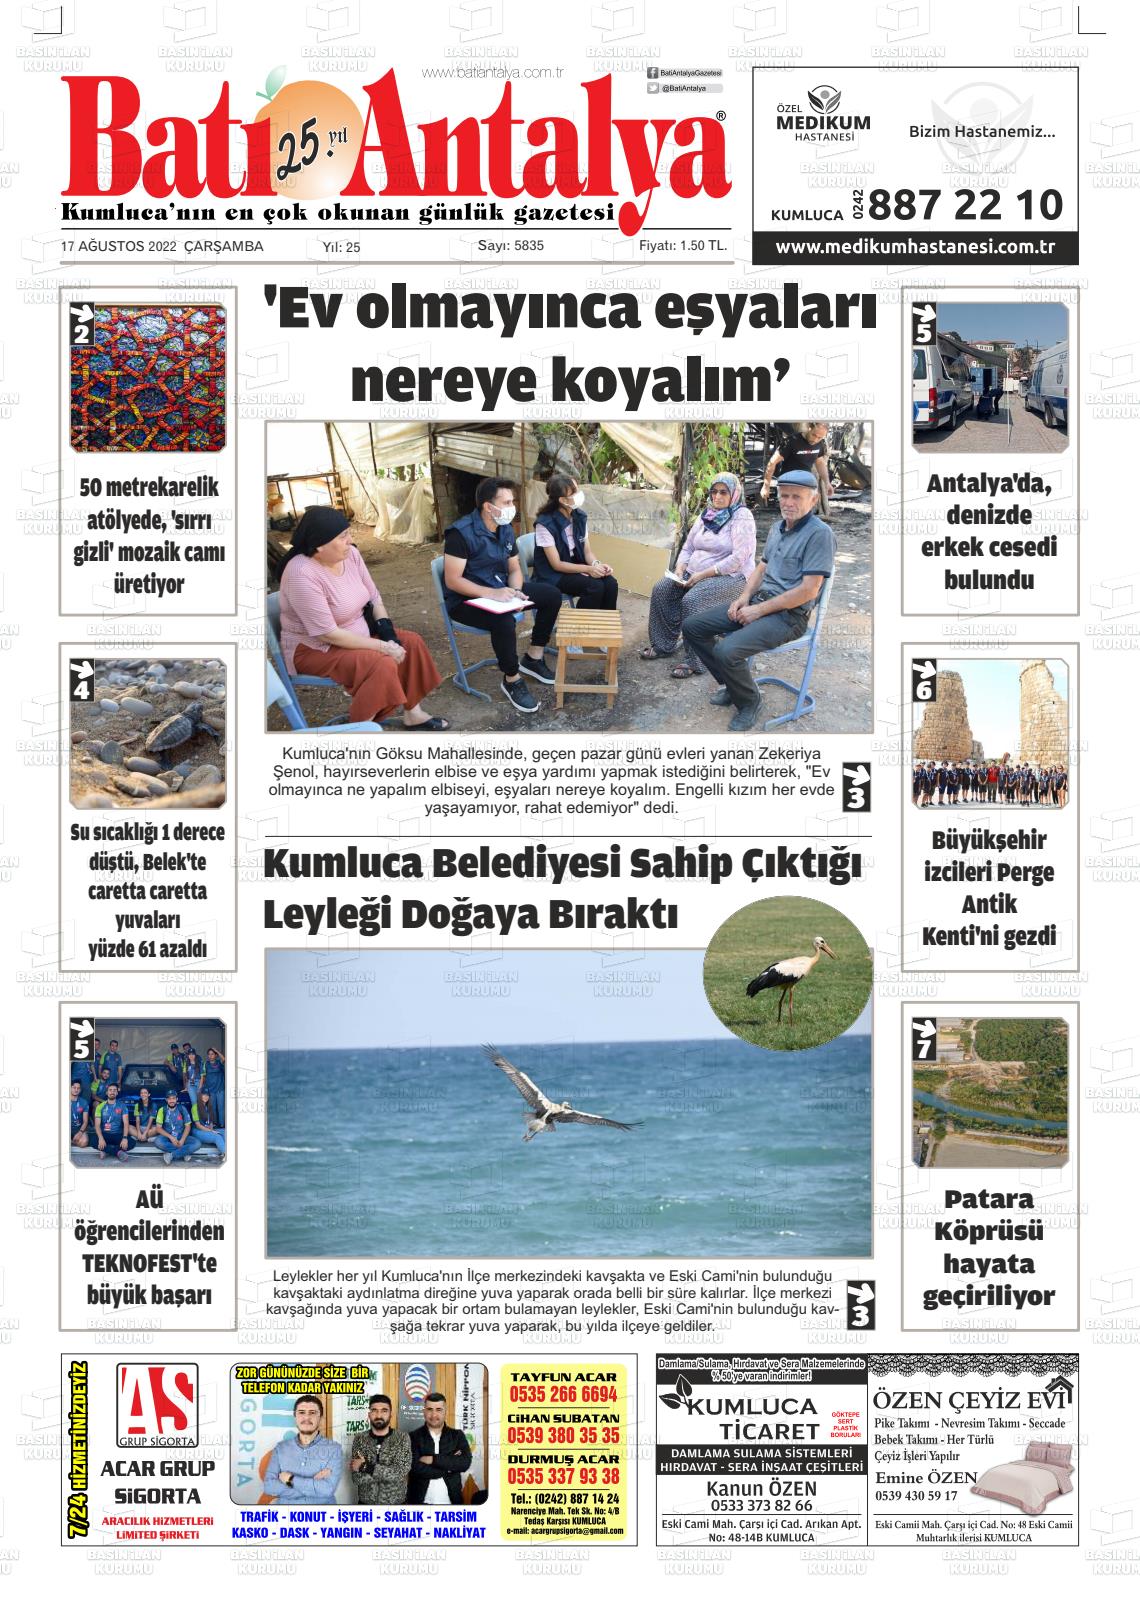 17 Ağustos 2022 Batı Antalya Gazete Manşeti